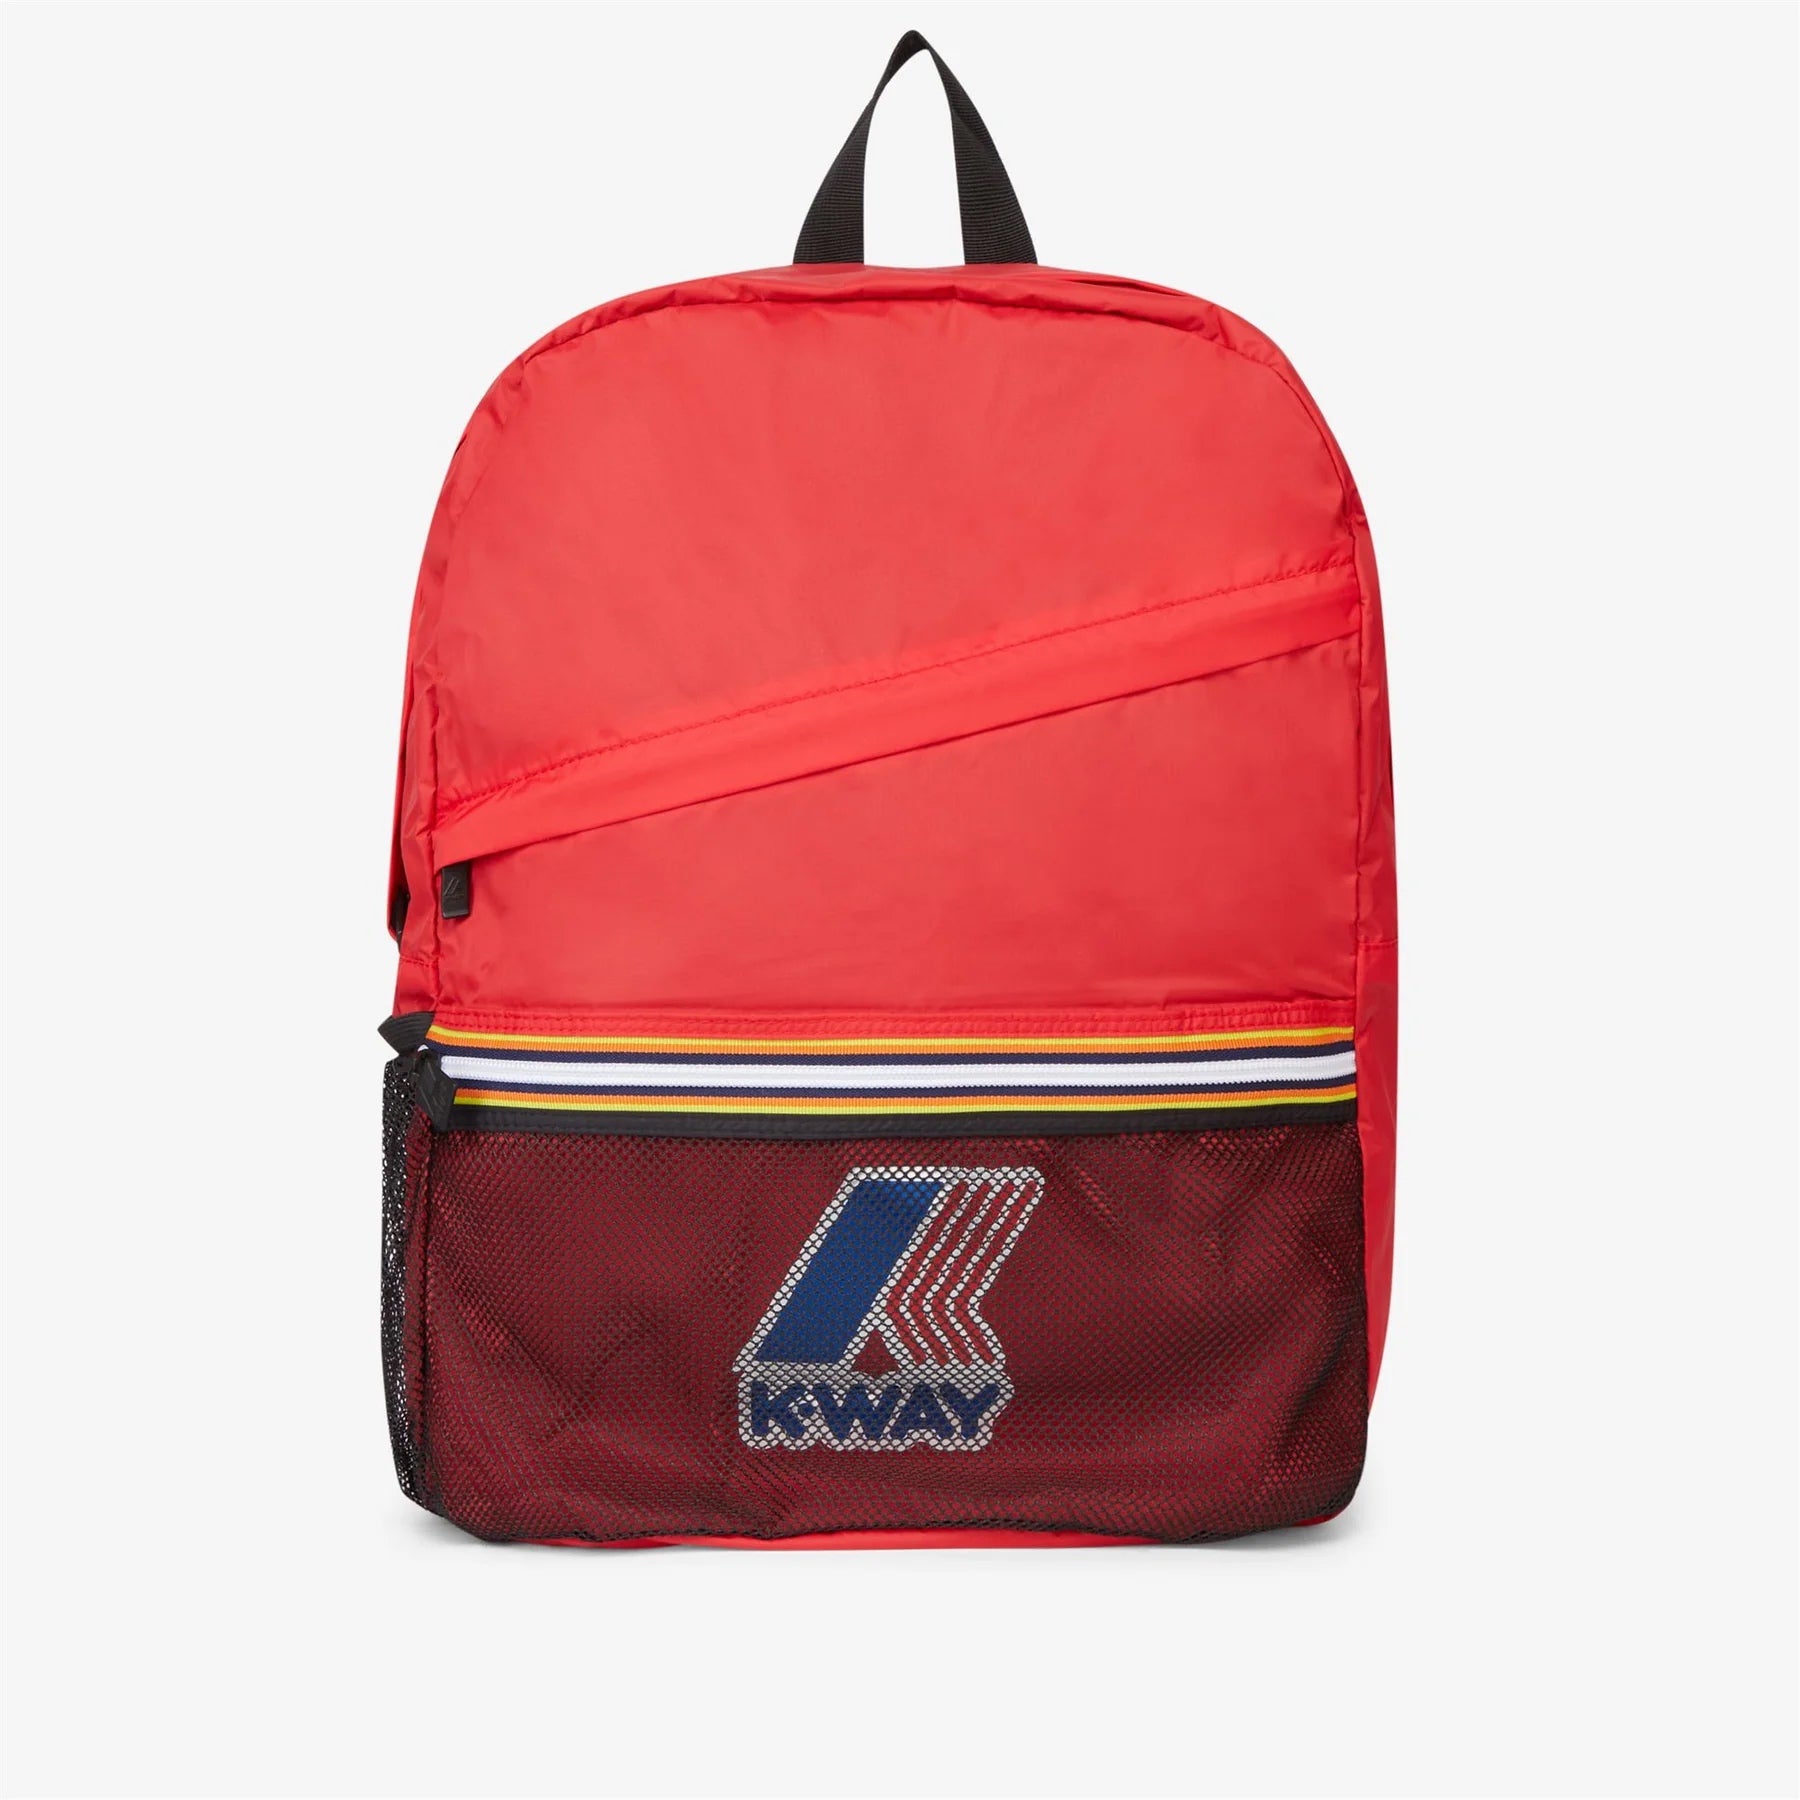 Le Vrai 3.0 Francois - K-Way Packable Ripstop Backpack in RedFrancois - Packable Ripstop Backpack in Red